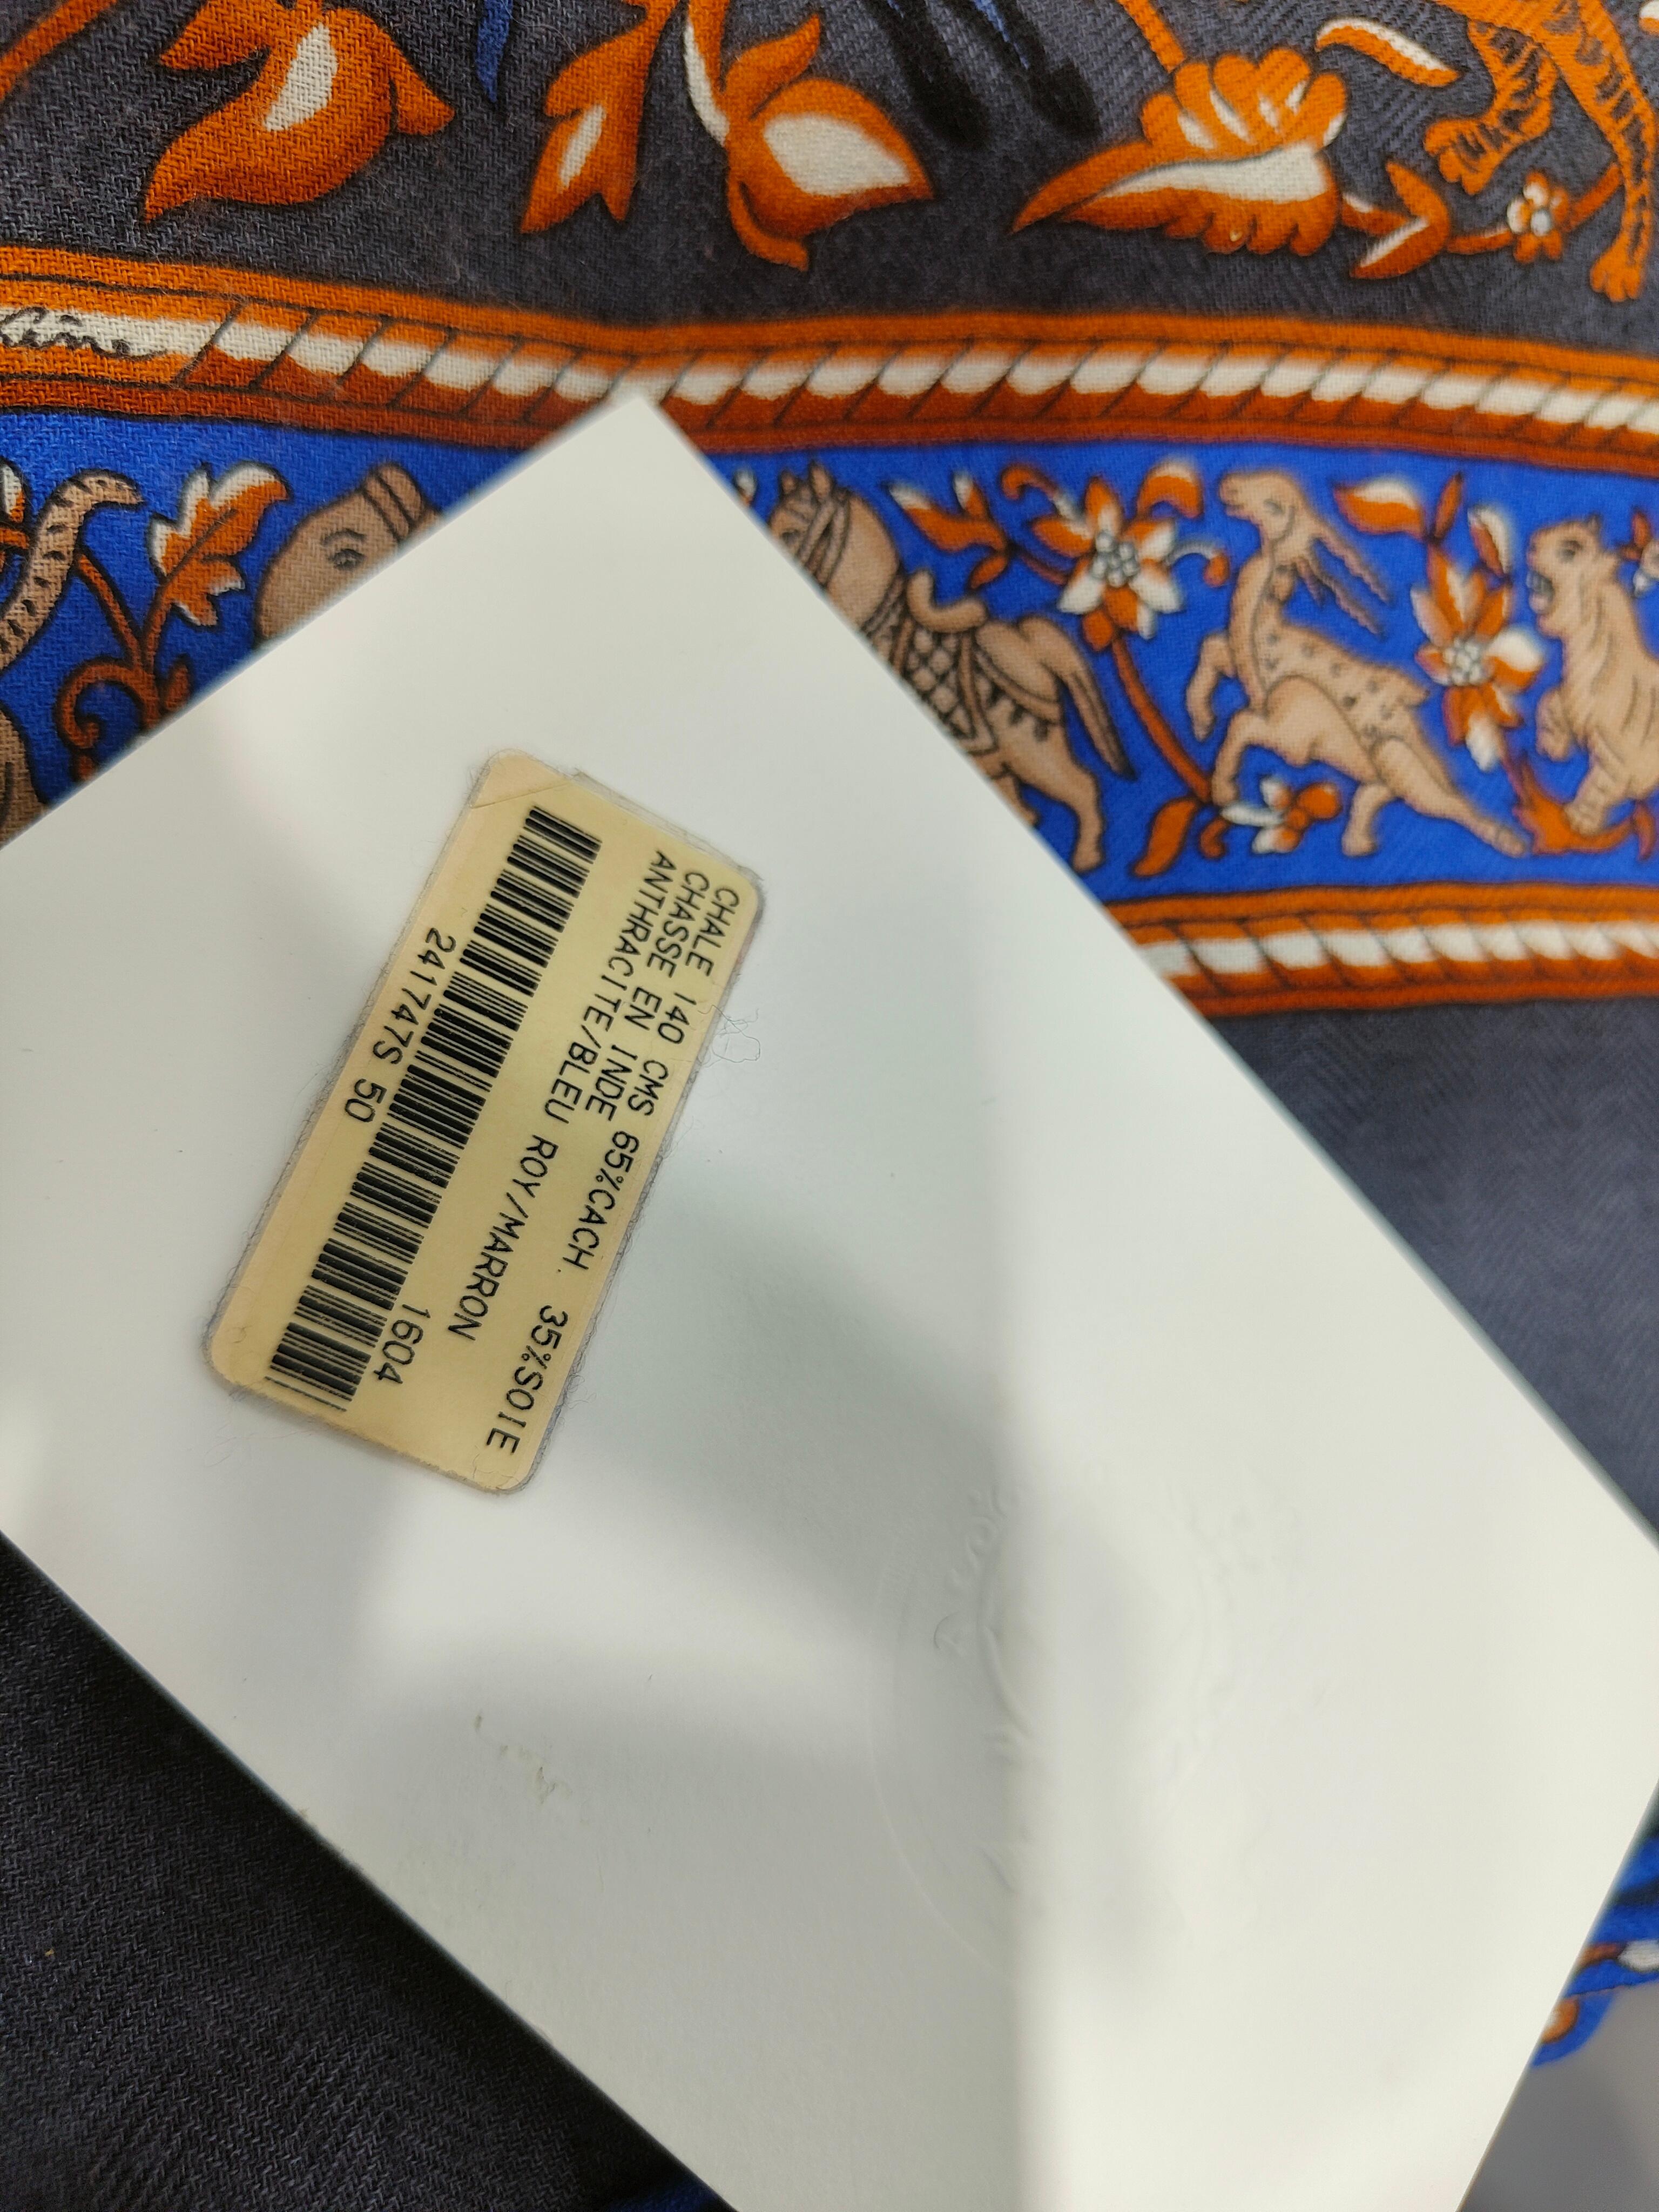 2016 Hermès Chasse EN Inde foulard 140 cm
65% cachemire, 35% soie
Couleurs : anthracite, Blue Roy et marron
Encore avec la boîte
